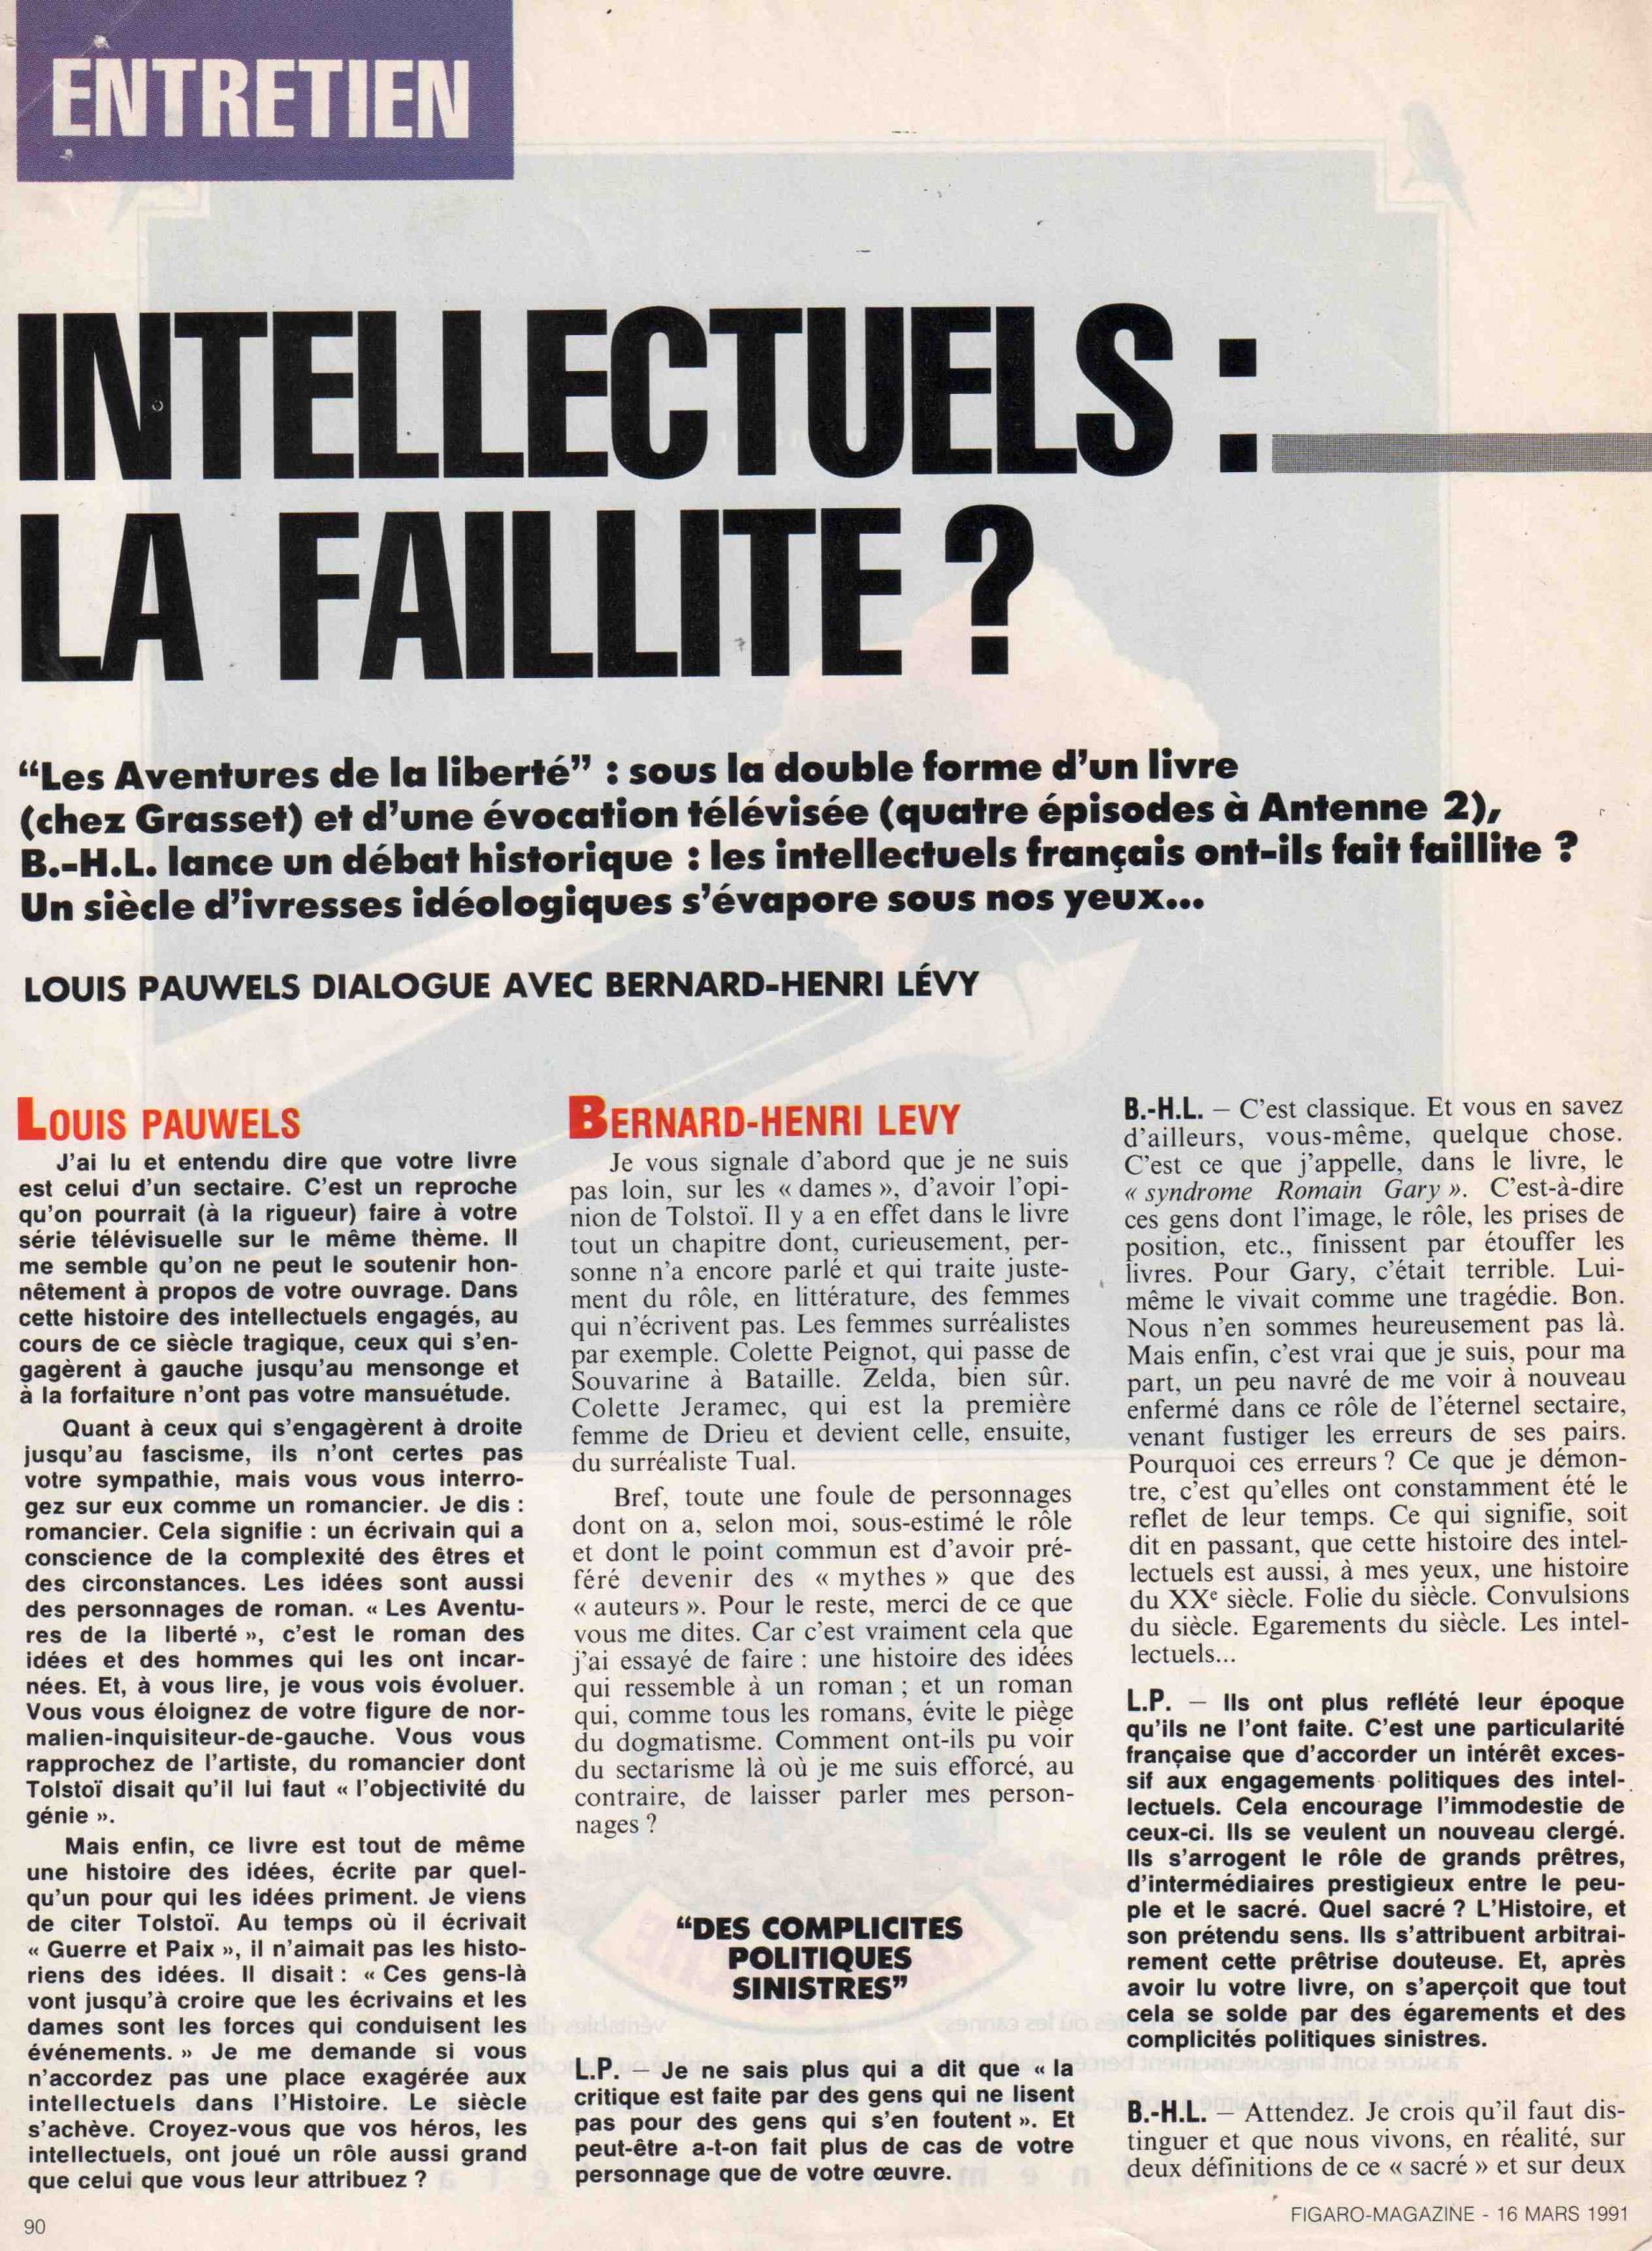 Entretien entre Louis Pauwels et Bernard-Henri Lévy dans le « Figaro Magazine » le 16 mars 1991.